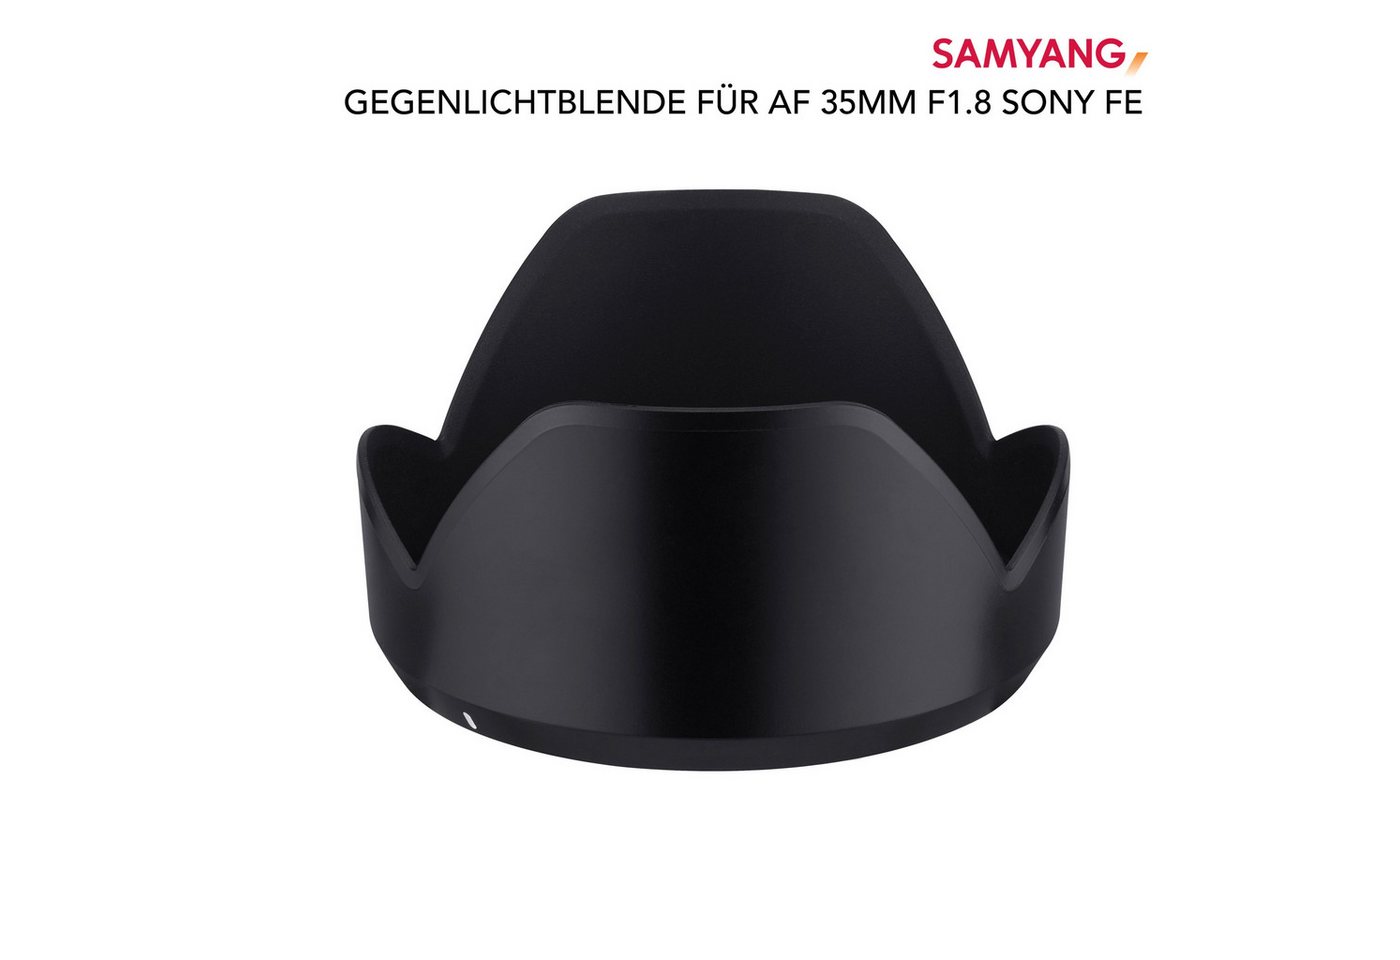 Samyang Gegenlichtblende für AF 35mm F1,8 Sony FE Gegenlichtblende von Samyang